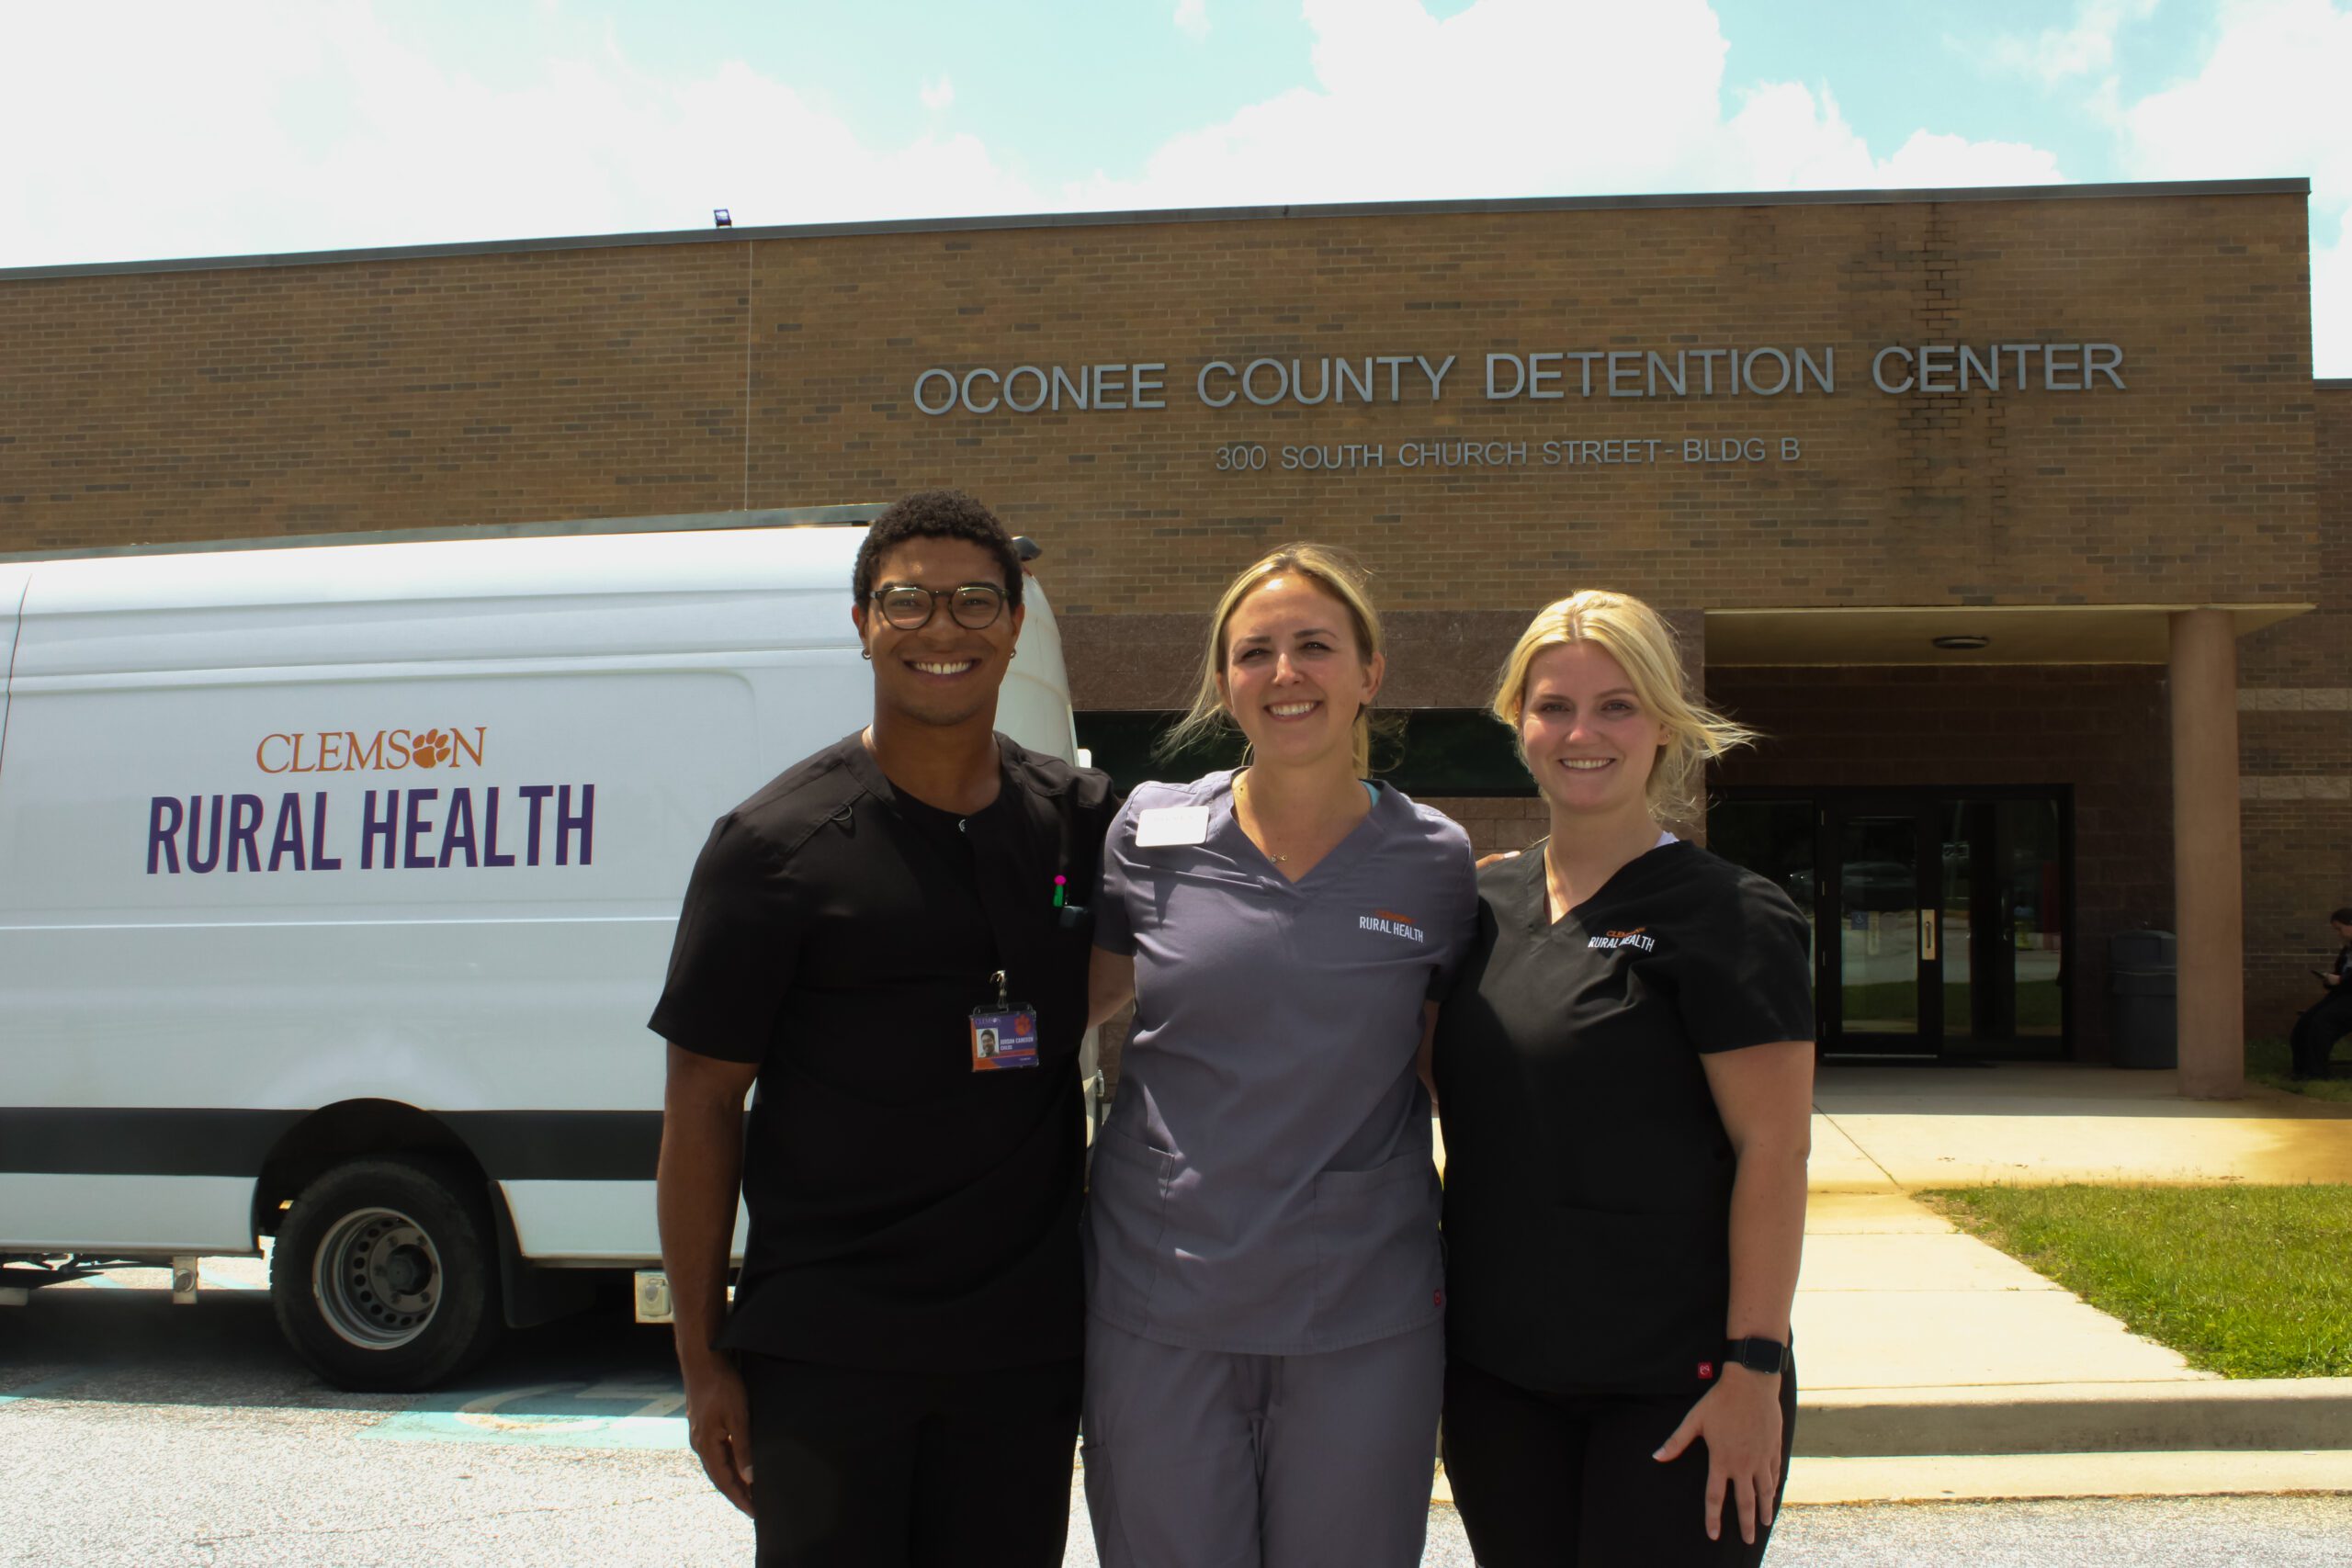 Clemson Rural Health mobile team at Oconee County Detention Center.